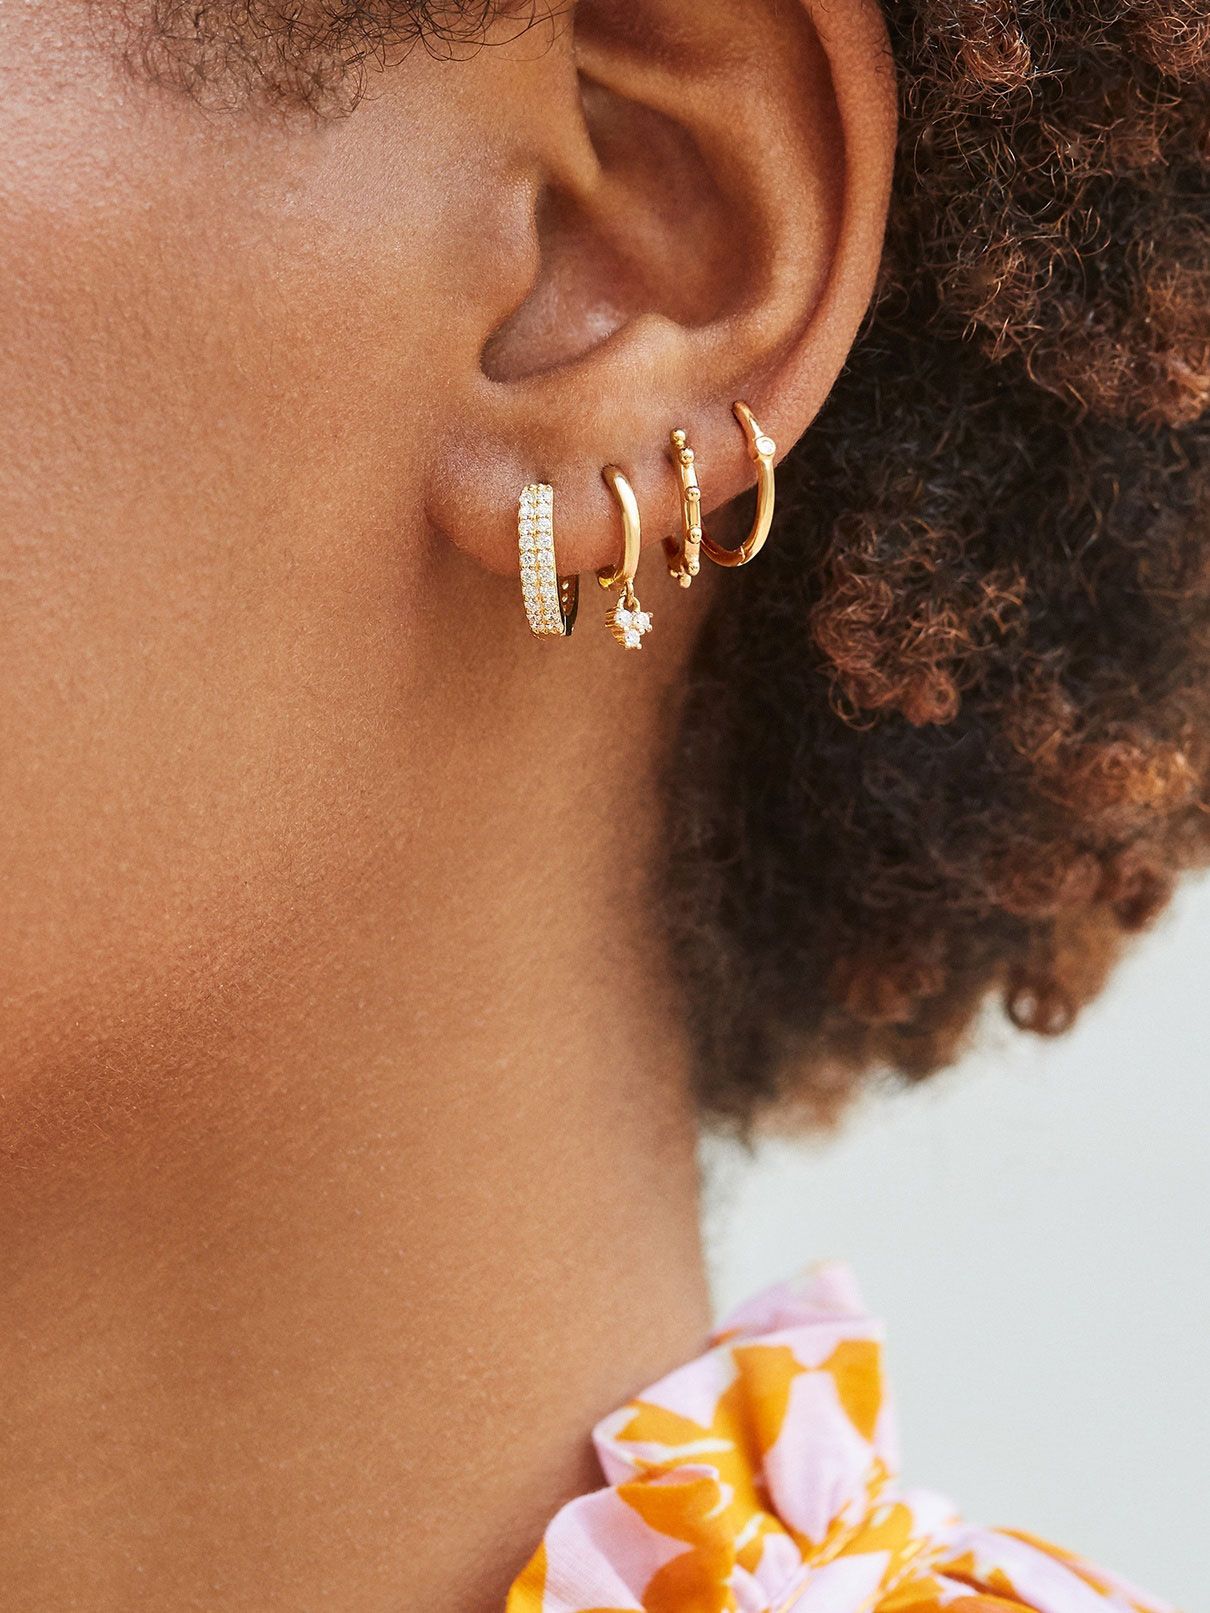 HYPOALLERGENIC EARRINGS 3 Pairs Nickel Free Stud Earrings Sensitive Skin  Gold Stainless Steel Earrings Opalite Earrings & CZ Earrings 